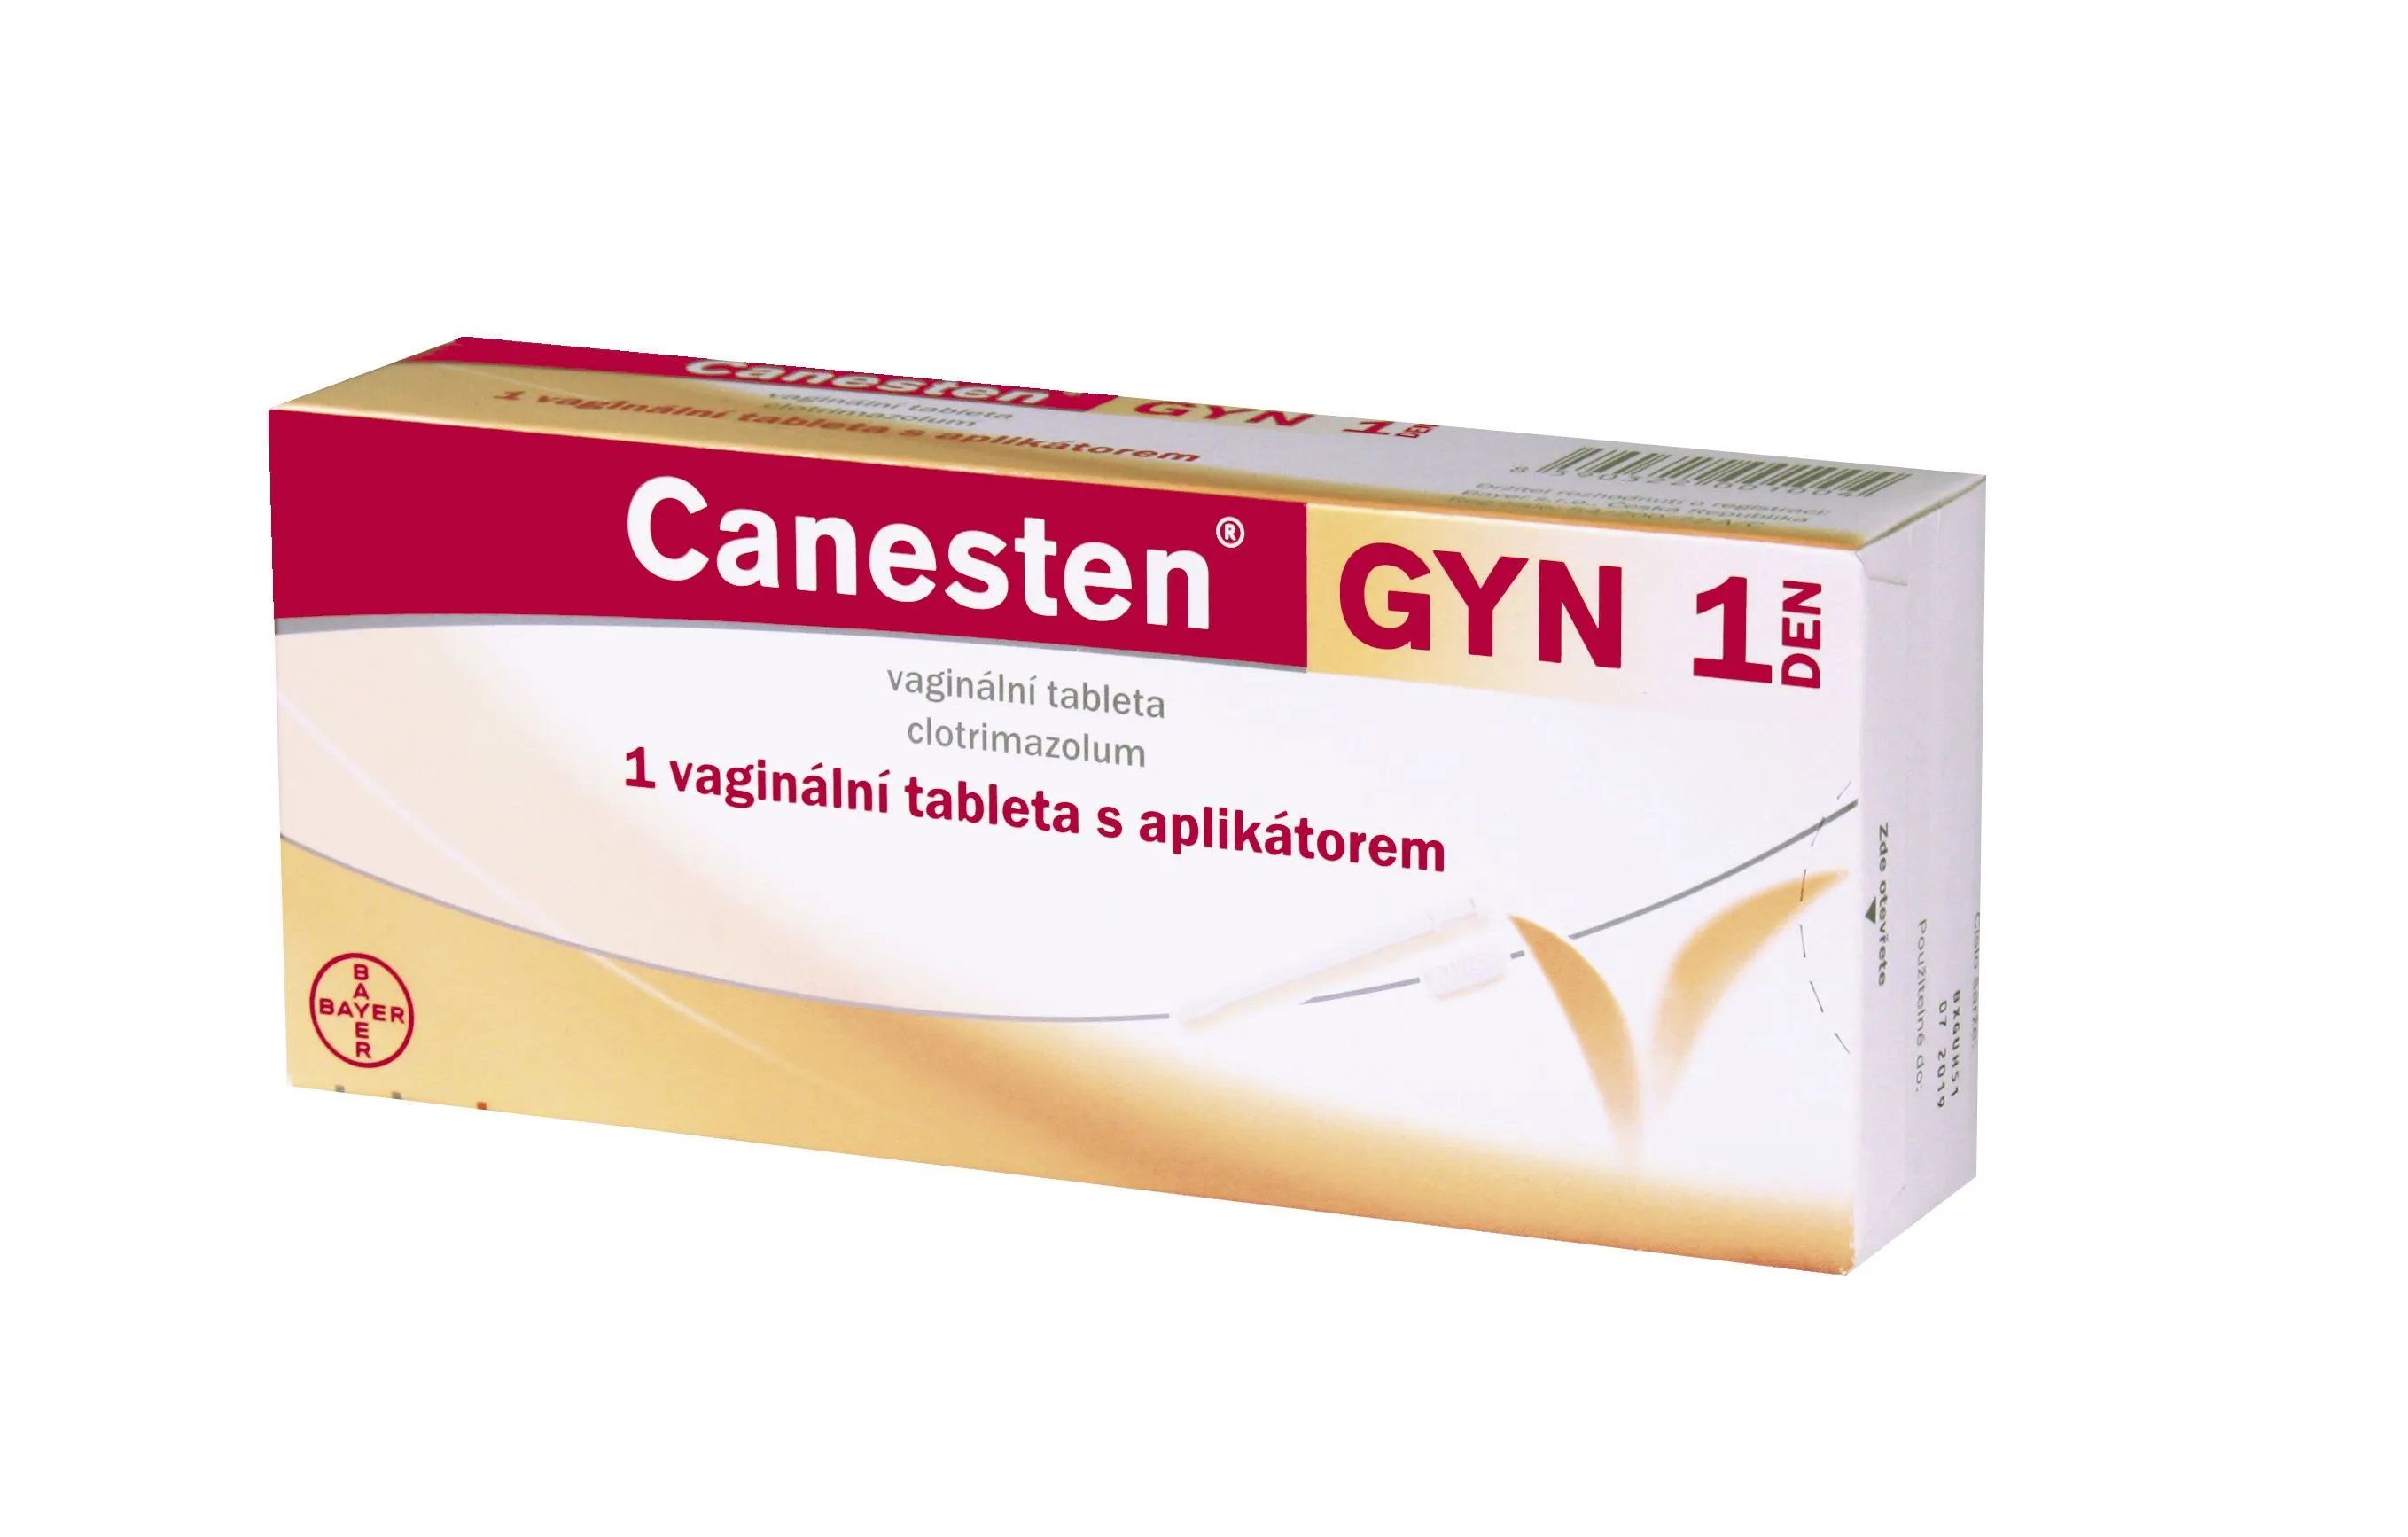 Canesten GYN 1 DEN 1 vaginální tableta